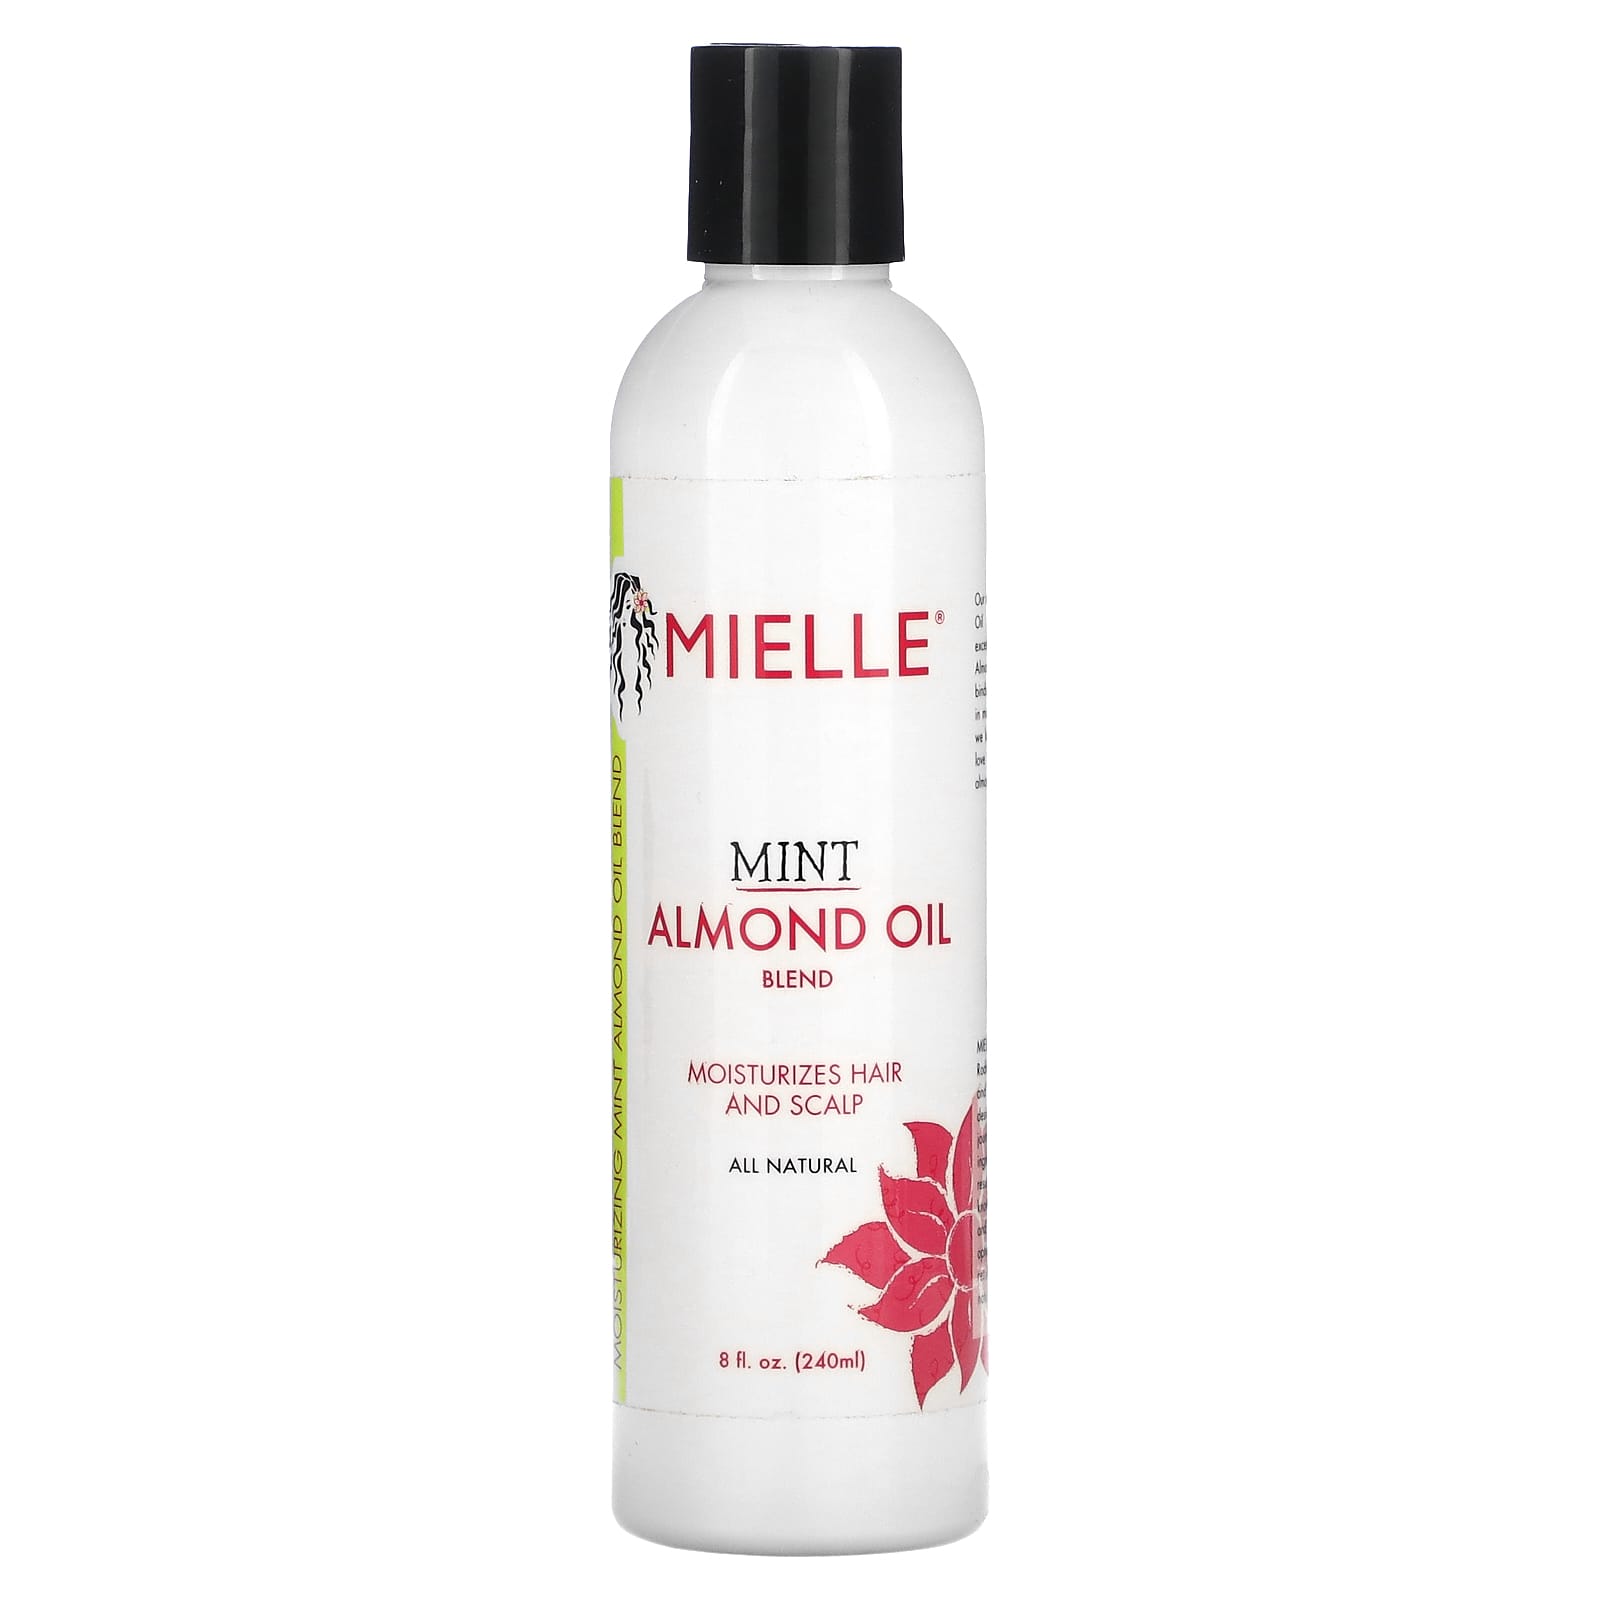 Mielle Scalp & Hair Strengthening Oil, Rosemary Mint - 2 fl oz